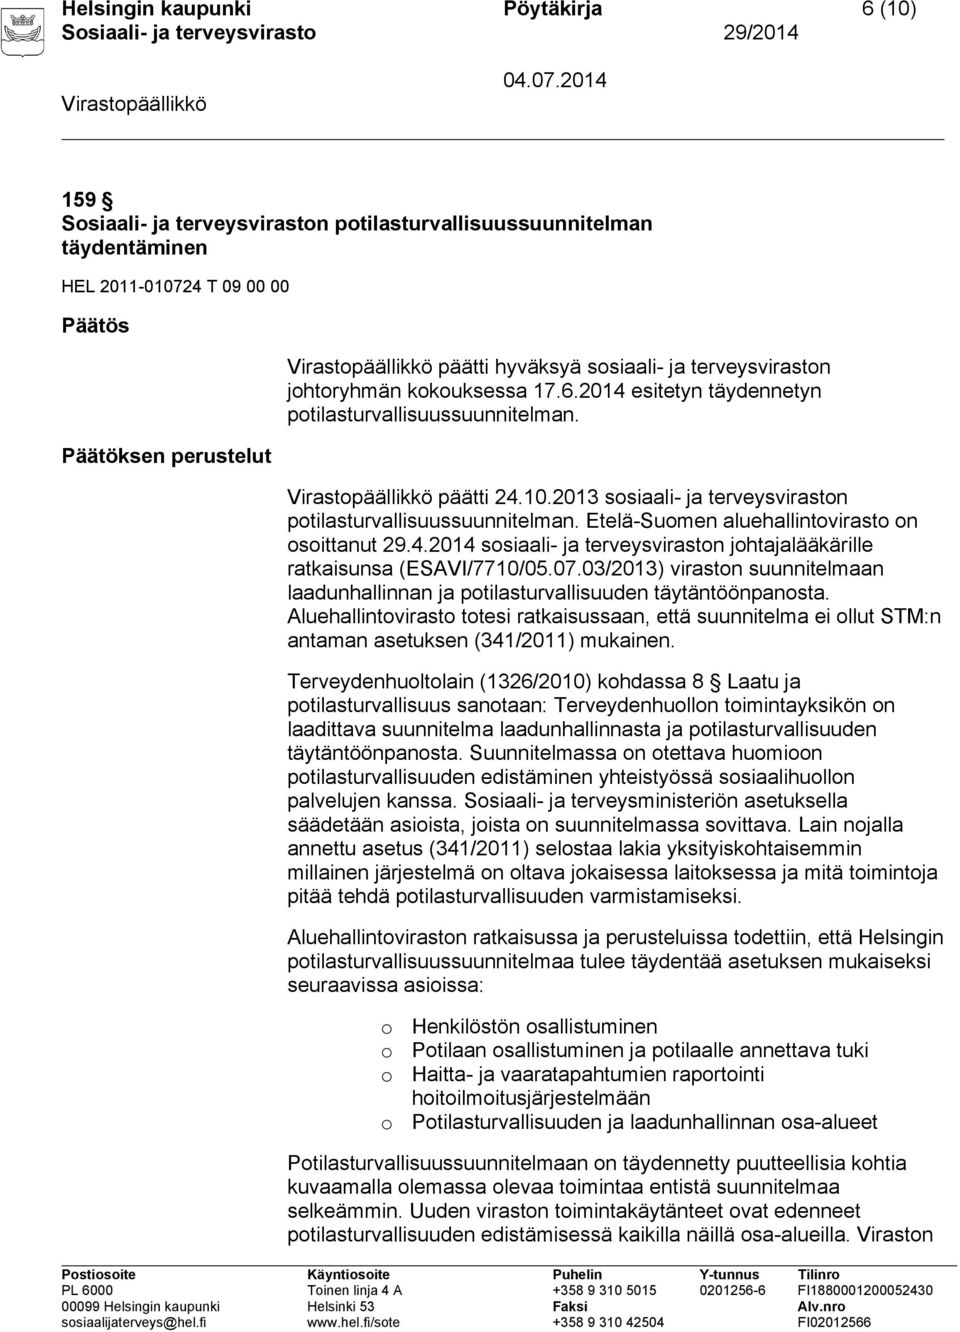 Etelä-Suomen aluehallintovirasto on osoittanut 29.4.2014 sosiaali- ja terveysviraston johtajalääkärille ratkaisunsa (ESAVI/7710/05.07.